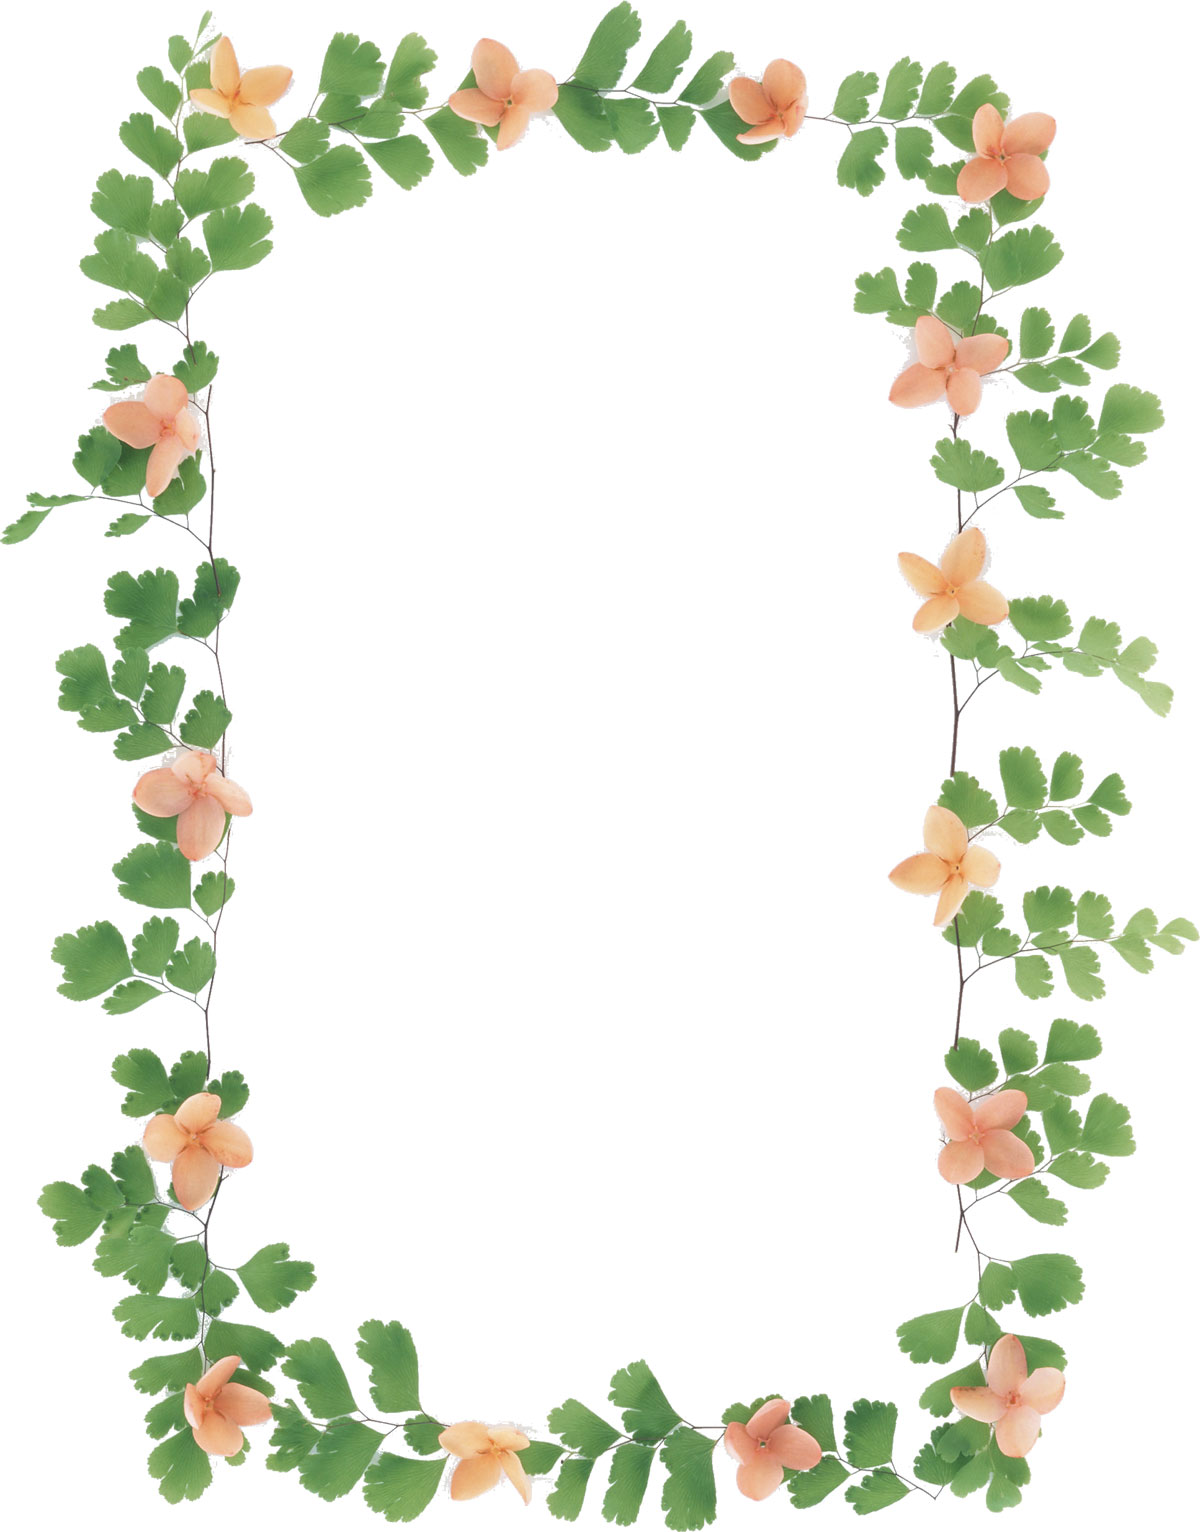 花の写真 フリー素材 フレーム枠no 114 ピンク 茎葉 緑